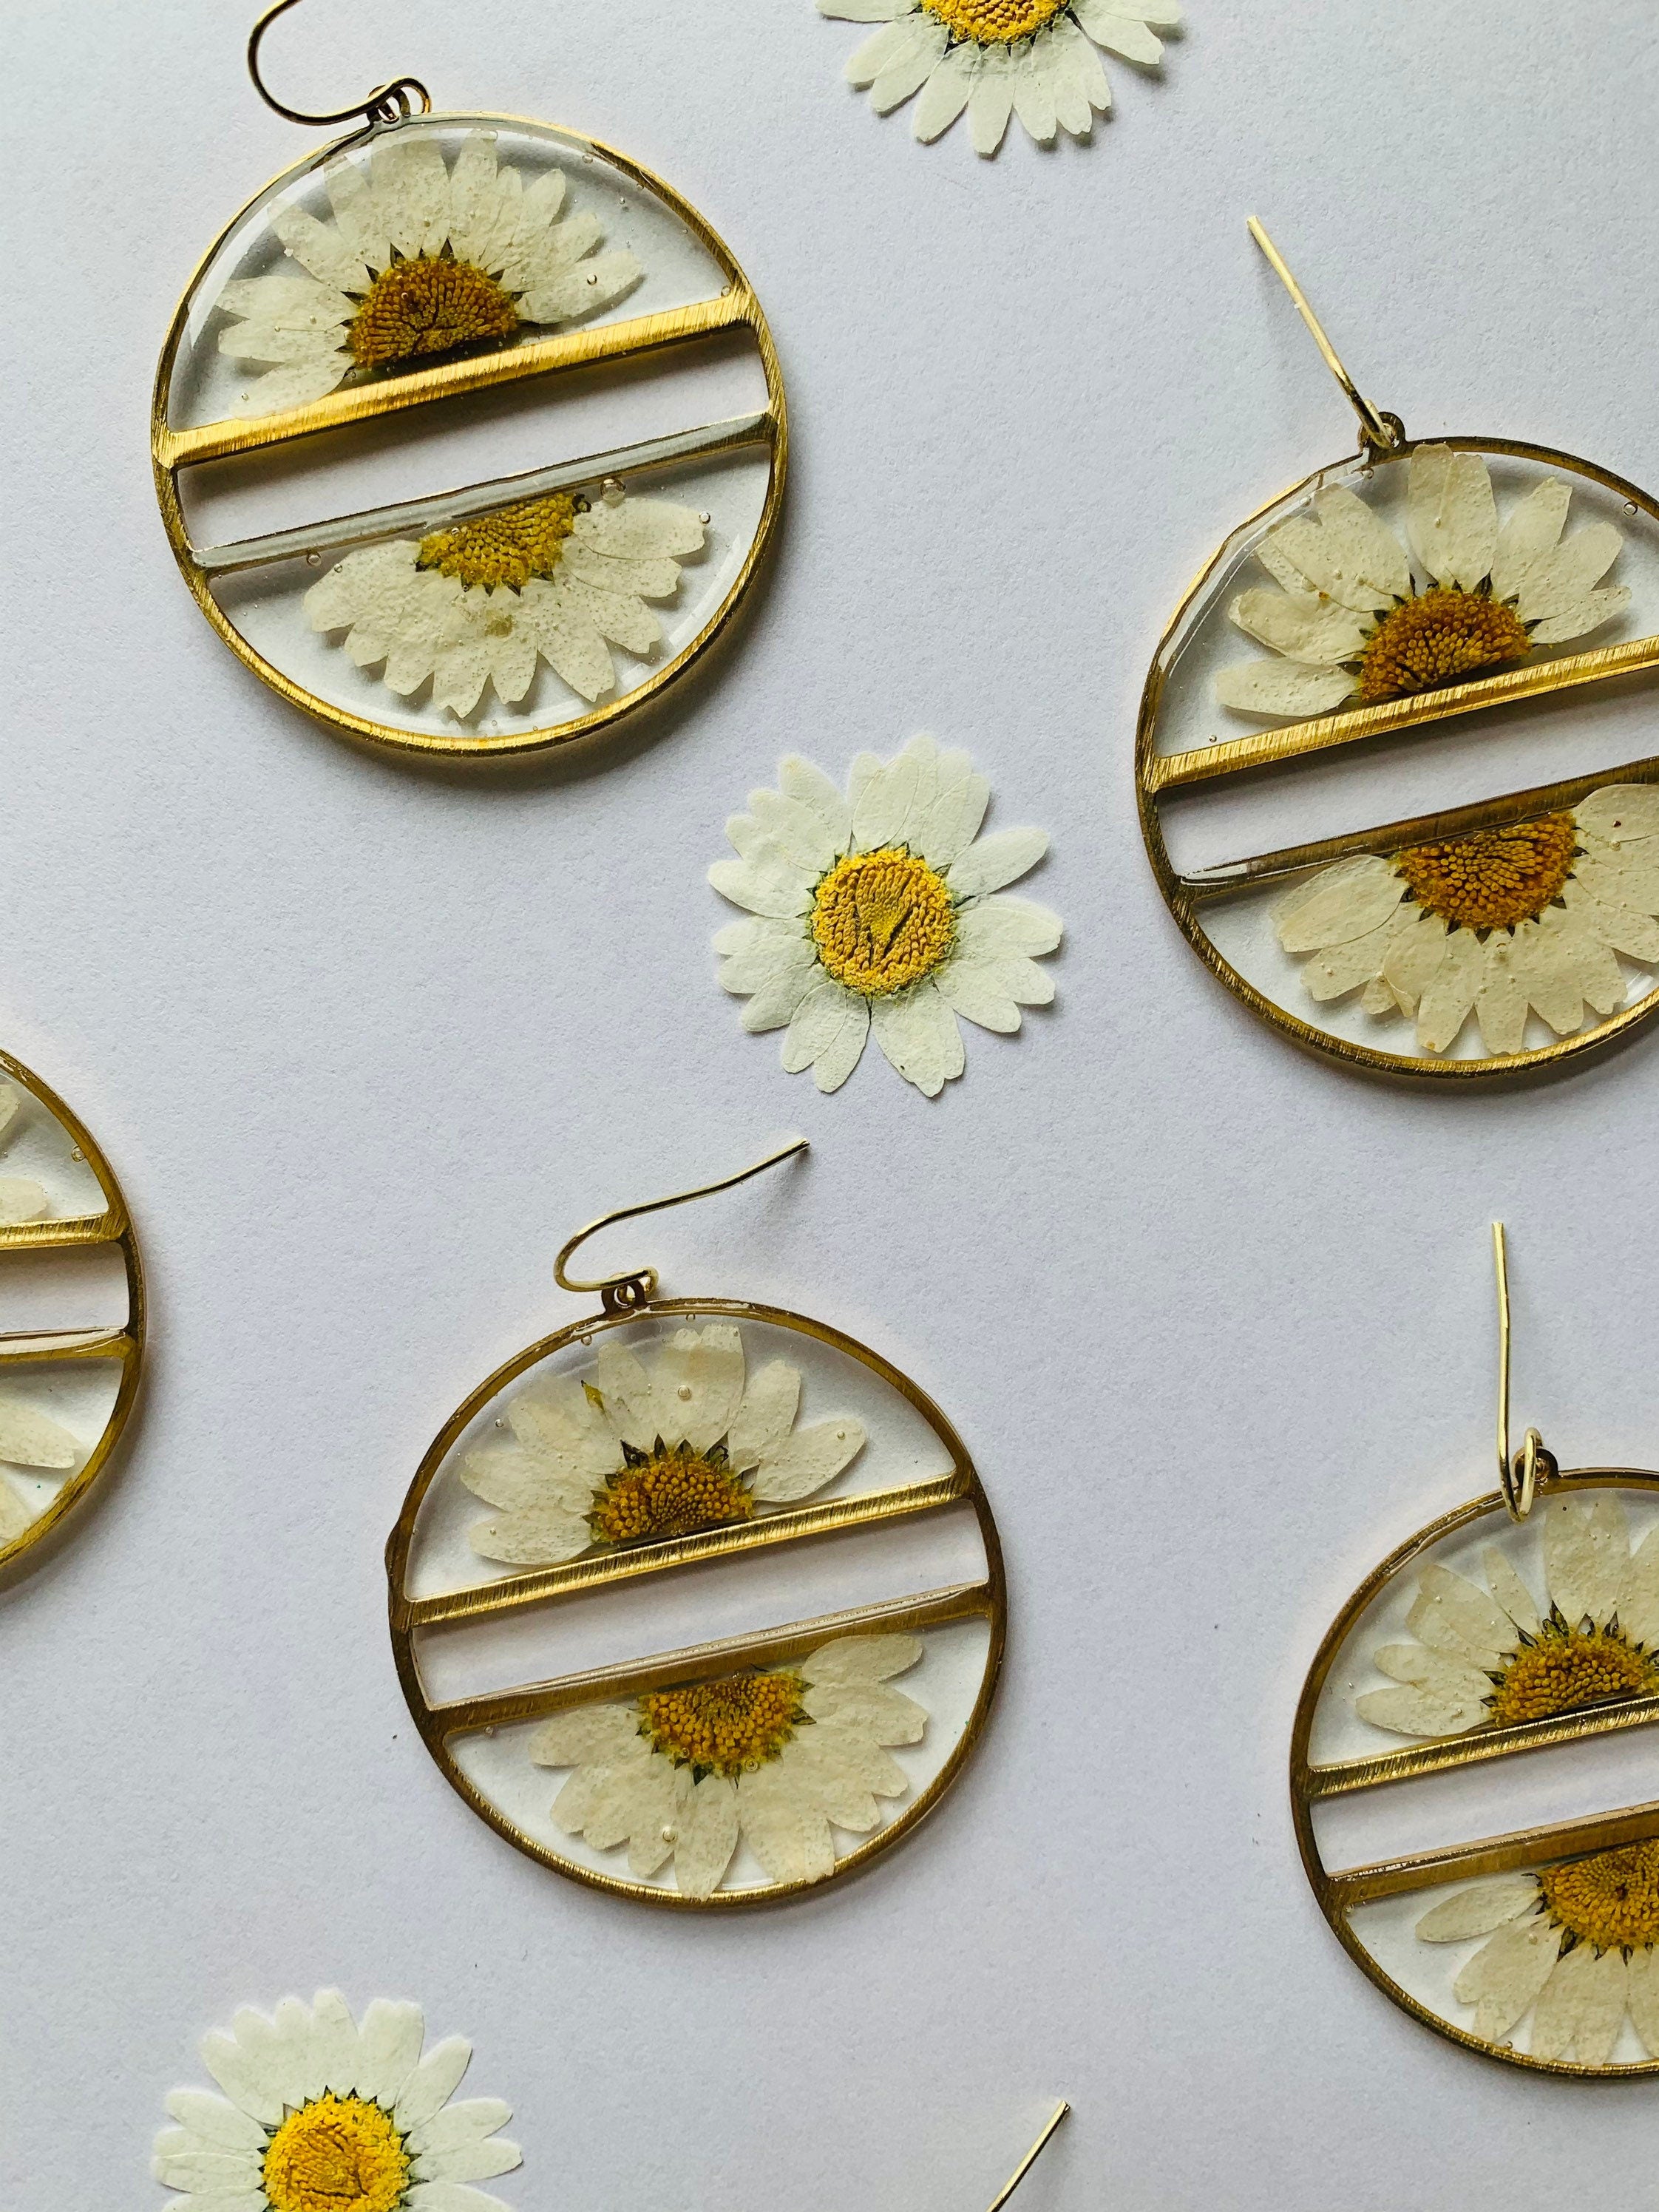 Flowers Blooming earrings — AgAuCu: handcrafted jewelry